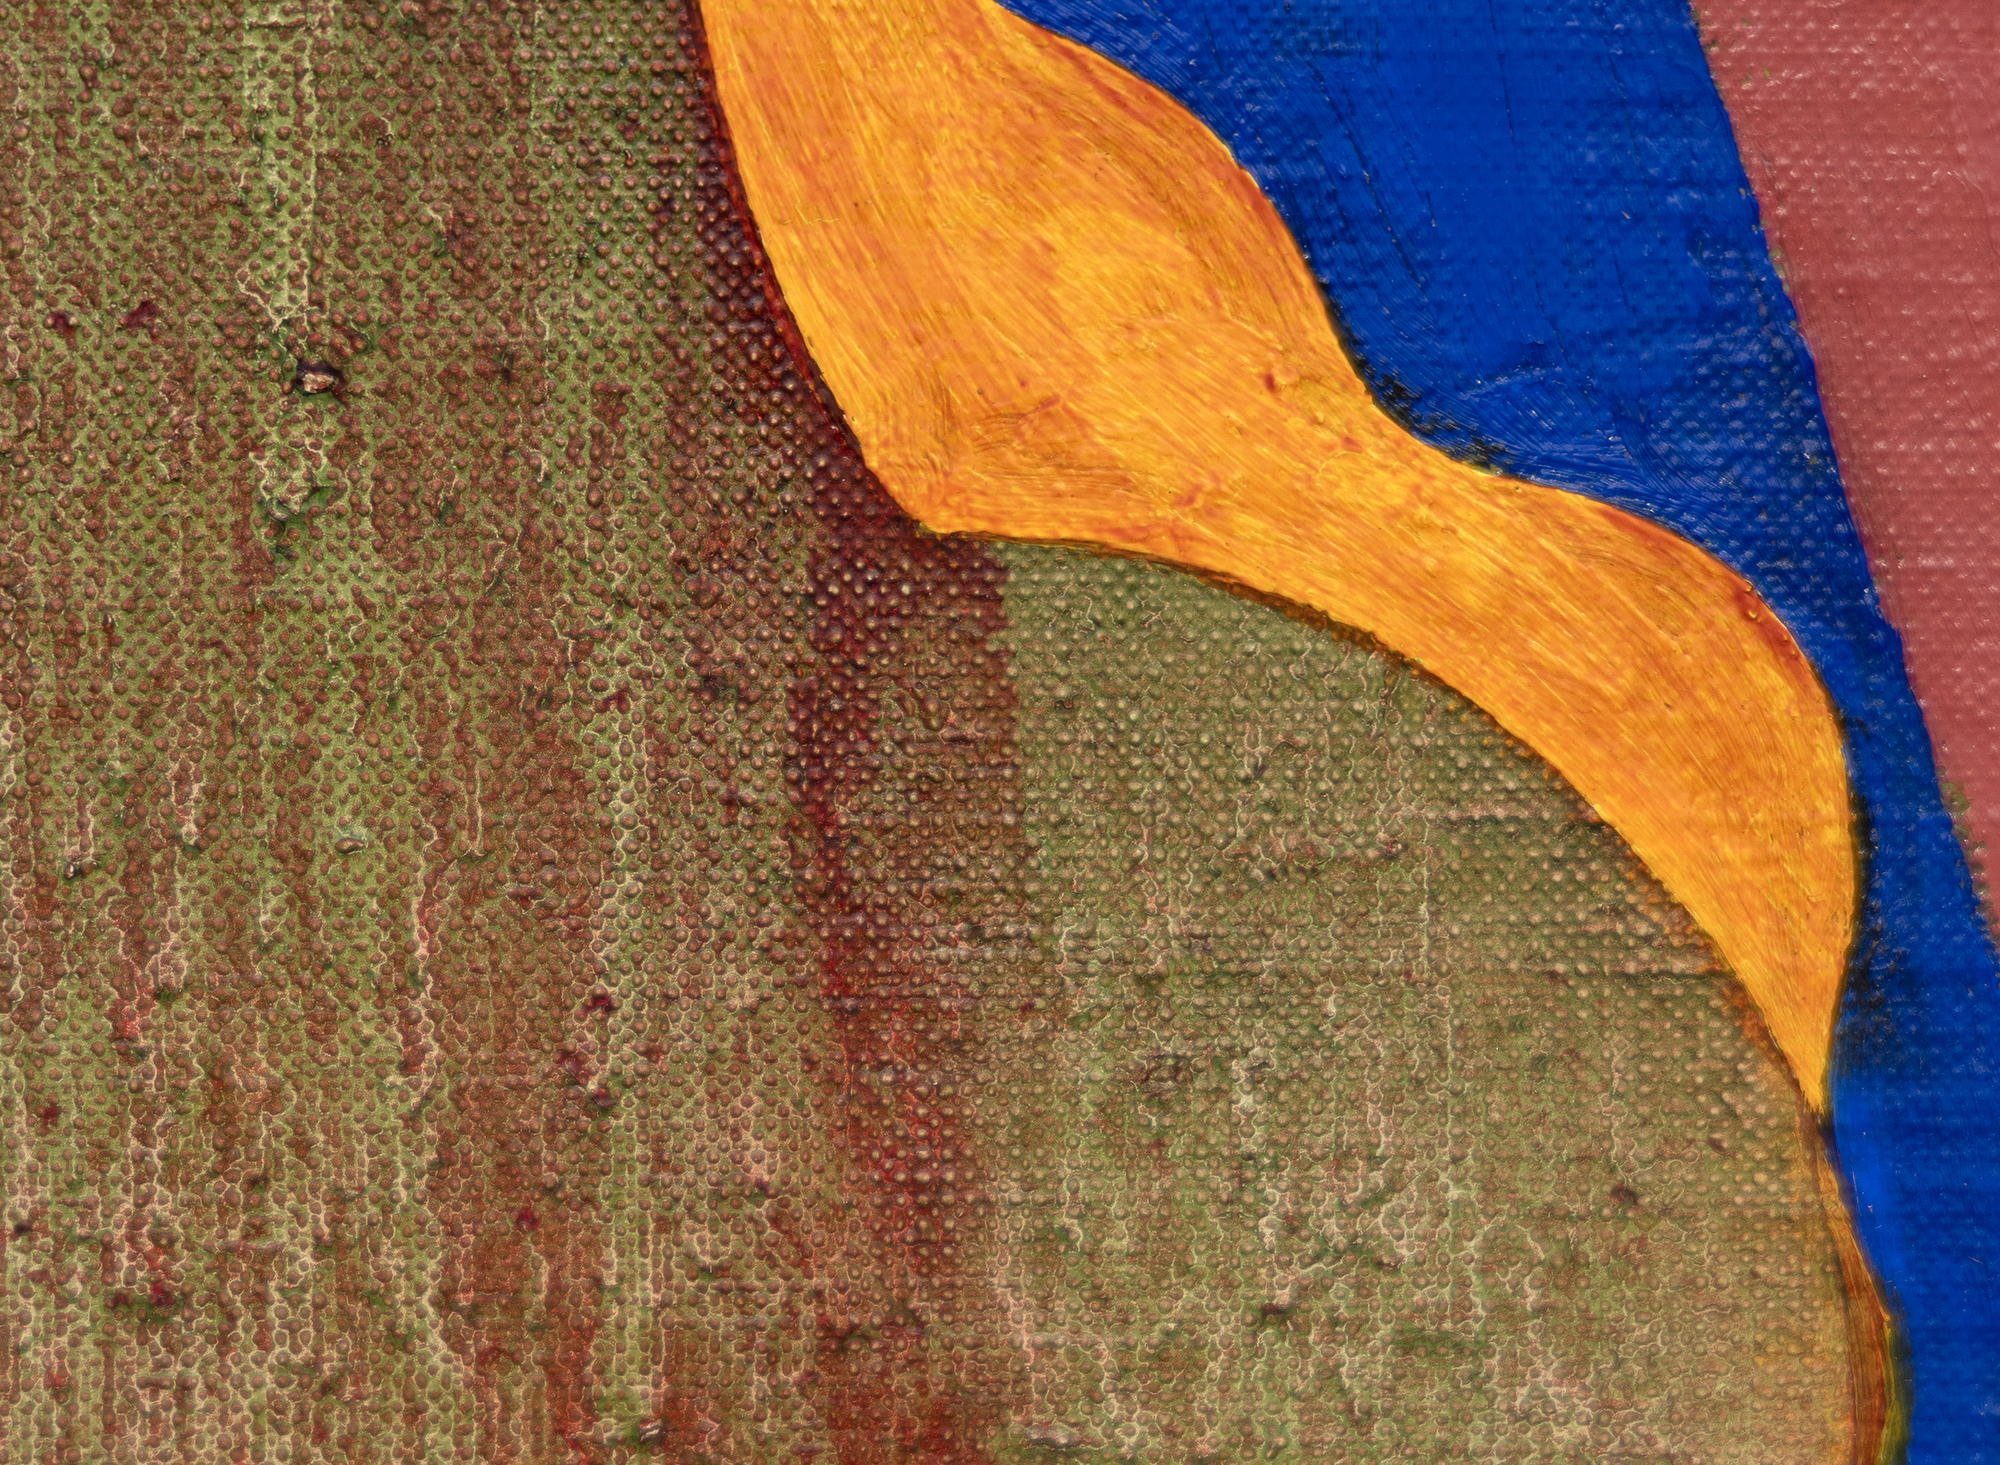 תומאס נוזקובסקי נולד ב-1944 ויצר ציורים קטנים בגוון עשיר המשקפים את ההשפעות הדיכוטומיות של האקספרסיוניסטים המופשטים ופליטי הבאוהאוס שעמם למד באיחוד קופר. באמצעות מברשת קטנה, הטיפול שלו כולל גירוד ושפשוף צבע בדרכים שנרשמות בעבודה המוגמרת. הוא פיתח אוצר מילים ייחודי ורחב היקף לפריסת צורות גיאומטריות דמויי ביומורפיות בערכות צבעים מגוונות ומגוון רחב של אסוציאציות: ריצוף אריחים, לאשכולות תאים, לארכיטקטורה ולחלל החיצון. לעתים קרובות, הם מזוקקים מזיכרונותיו וחוויותיו. נוזקובסקי הגיב על הציור הספציפי הזה (ללא כותרת, 1994) ואמר כי הוא משקף את המשיכה שלו לסצינות המיתולוגיות שצוירו על לוחות חזה נדוניה של הרנסנס. הוא ביטא אותו כאחד הטובים ביותר מבין שלושה או ארבעה לוחות בגודל 15 אינץ' x 30 אינץ' בסדרה זו. נוזקובסקי טופל במשך שנים רבות על ידי גלריית פייס. הוא נפטר בשנת 2019.